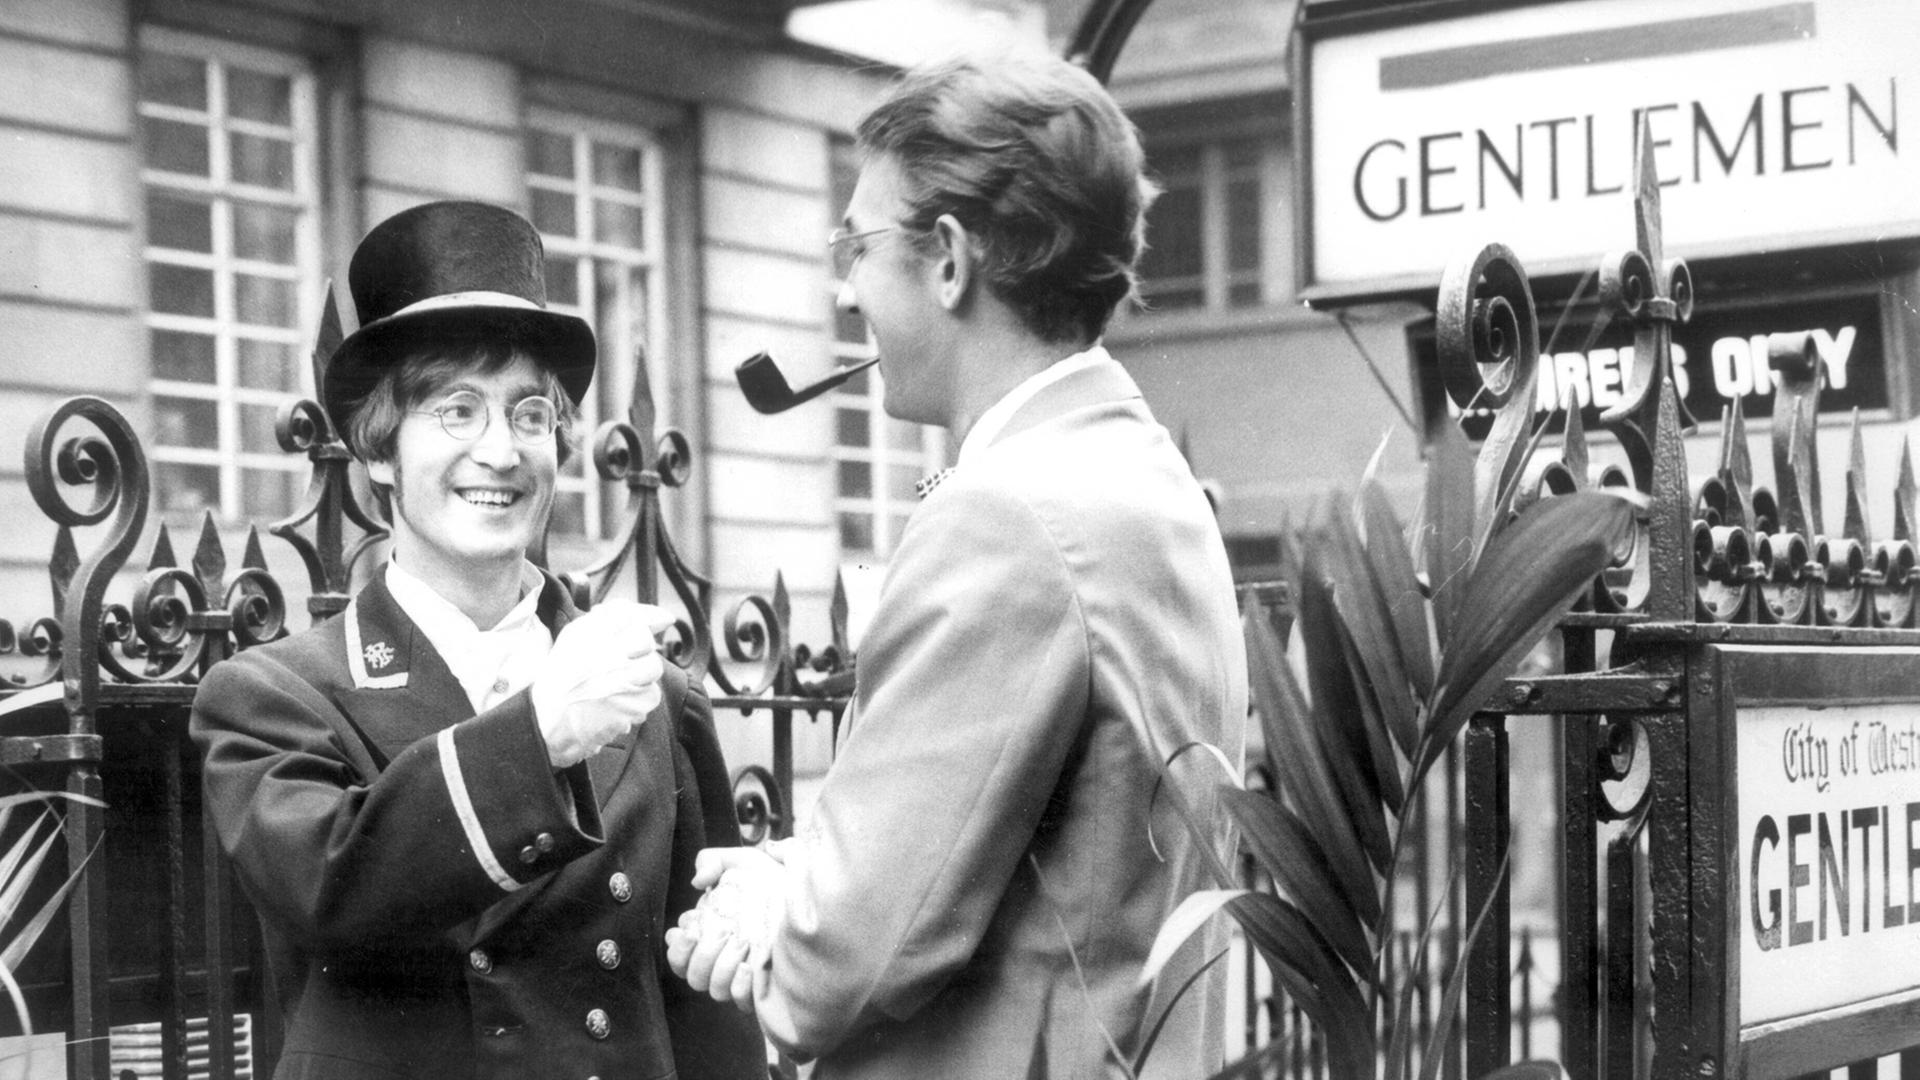 Beatle-Star John Lennon bei einem Gastauftritt in der Fernsehshow "Not only ... but also".